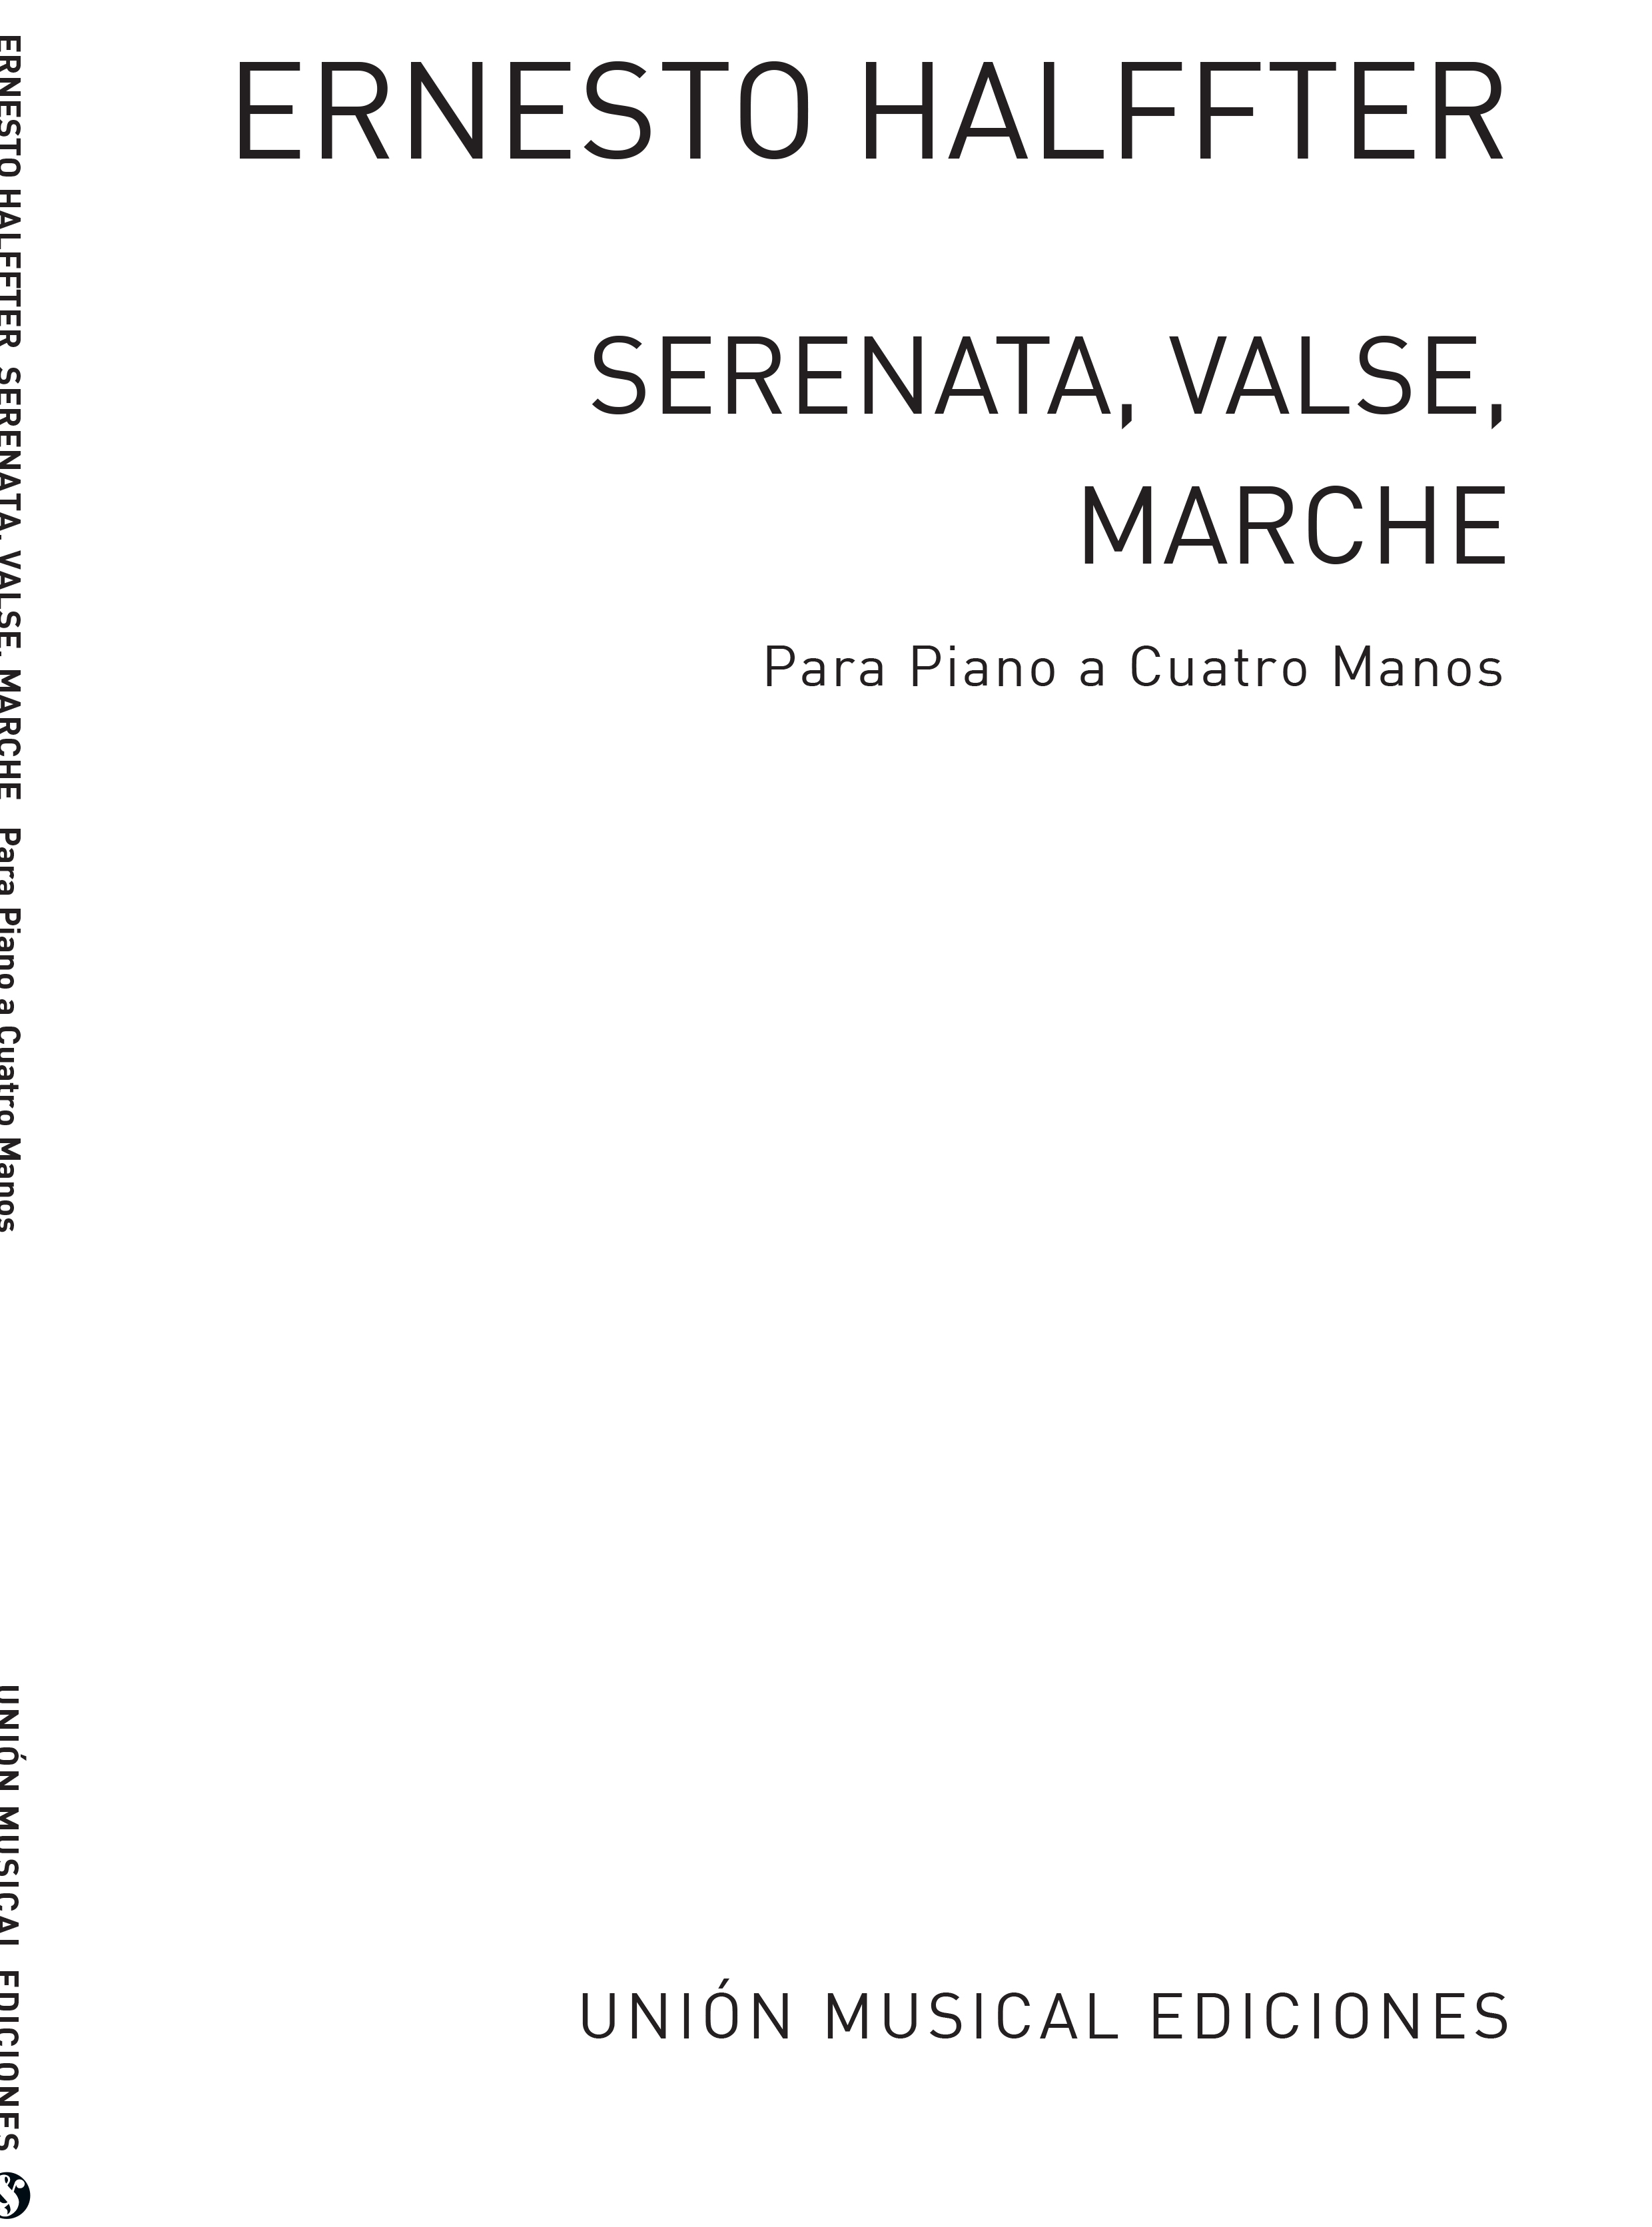 Ernesto Halffter: Serenata Valse Marche (Piano Duet)